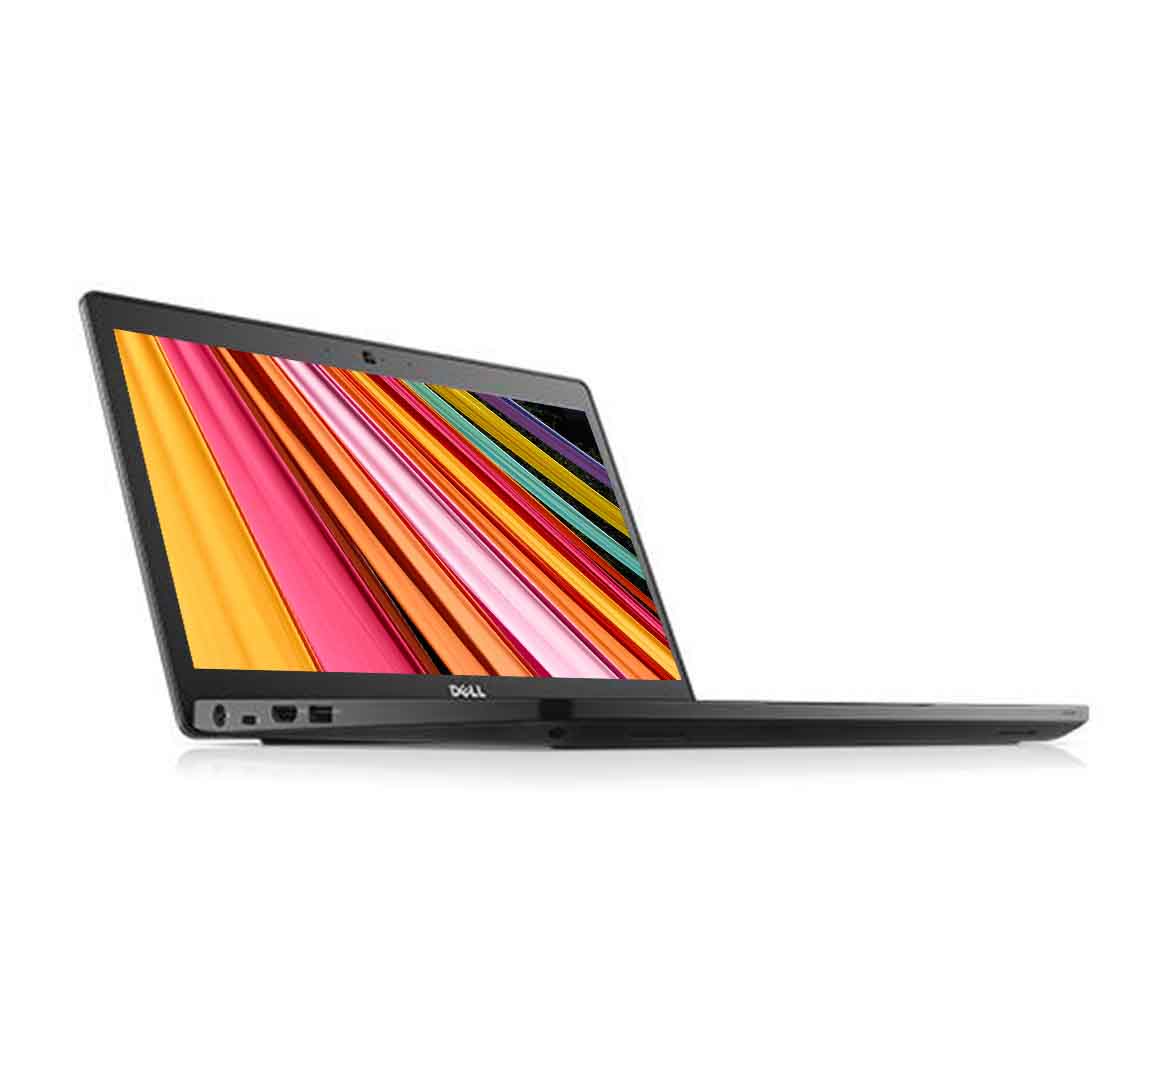 Dell Latitude E5280 Business Laptop, Intel Core i5-7th Gen CPU, 8GB RAM, 256GB SSD, 12.5 inch Display, Windows 10 Pro